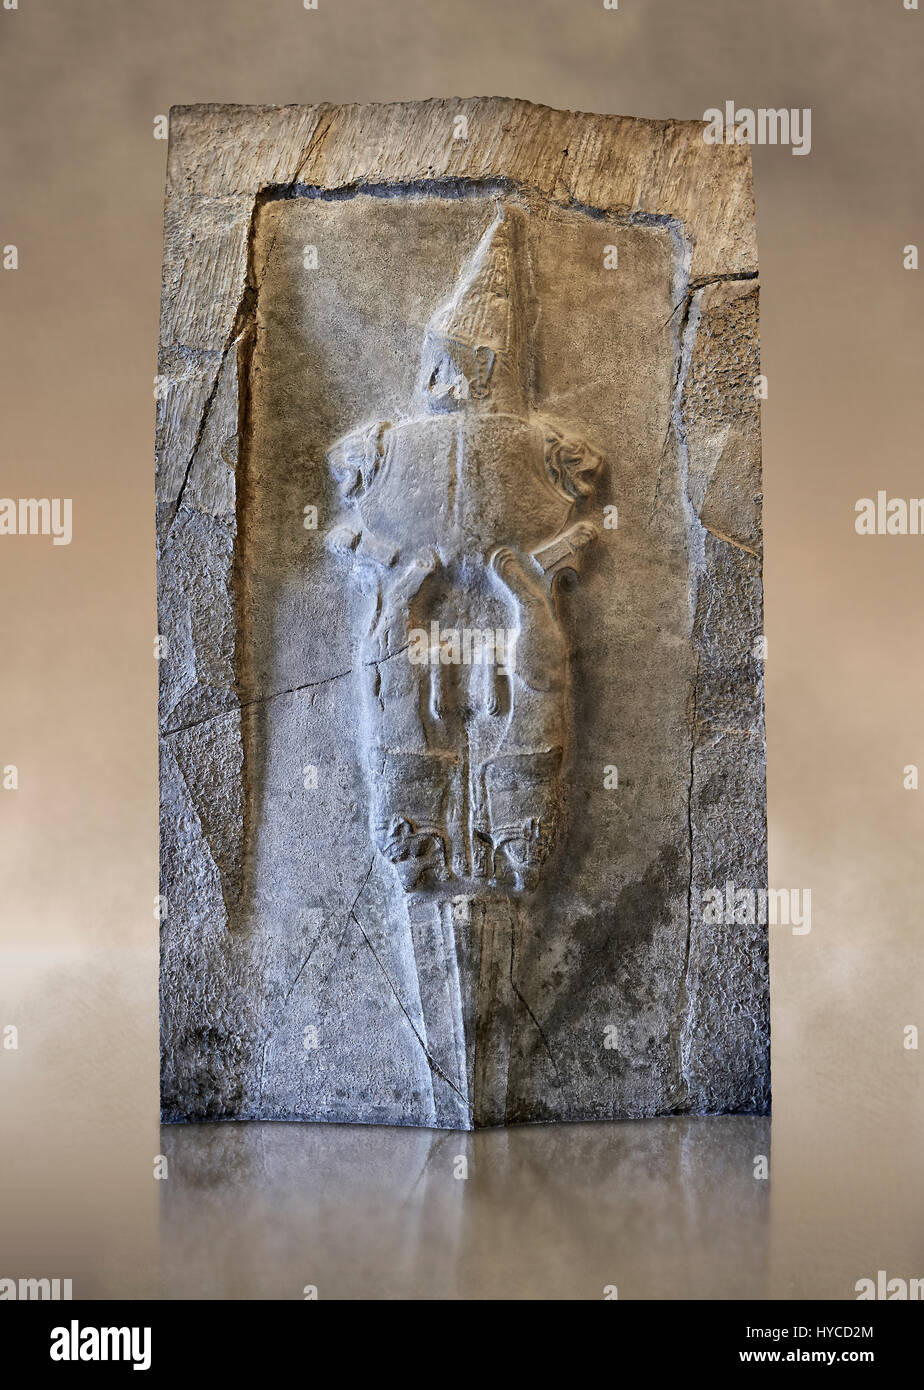 Das Schwert Gottes aus Sancutary Yazilikaza, Hattuscha, Türkei.  Wahrscheinlich zeigt die verrückteste Darstellung des Heiligtums Rock  Yazilikaza, eine sw Stockfotografie - Alamy